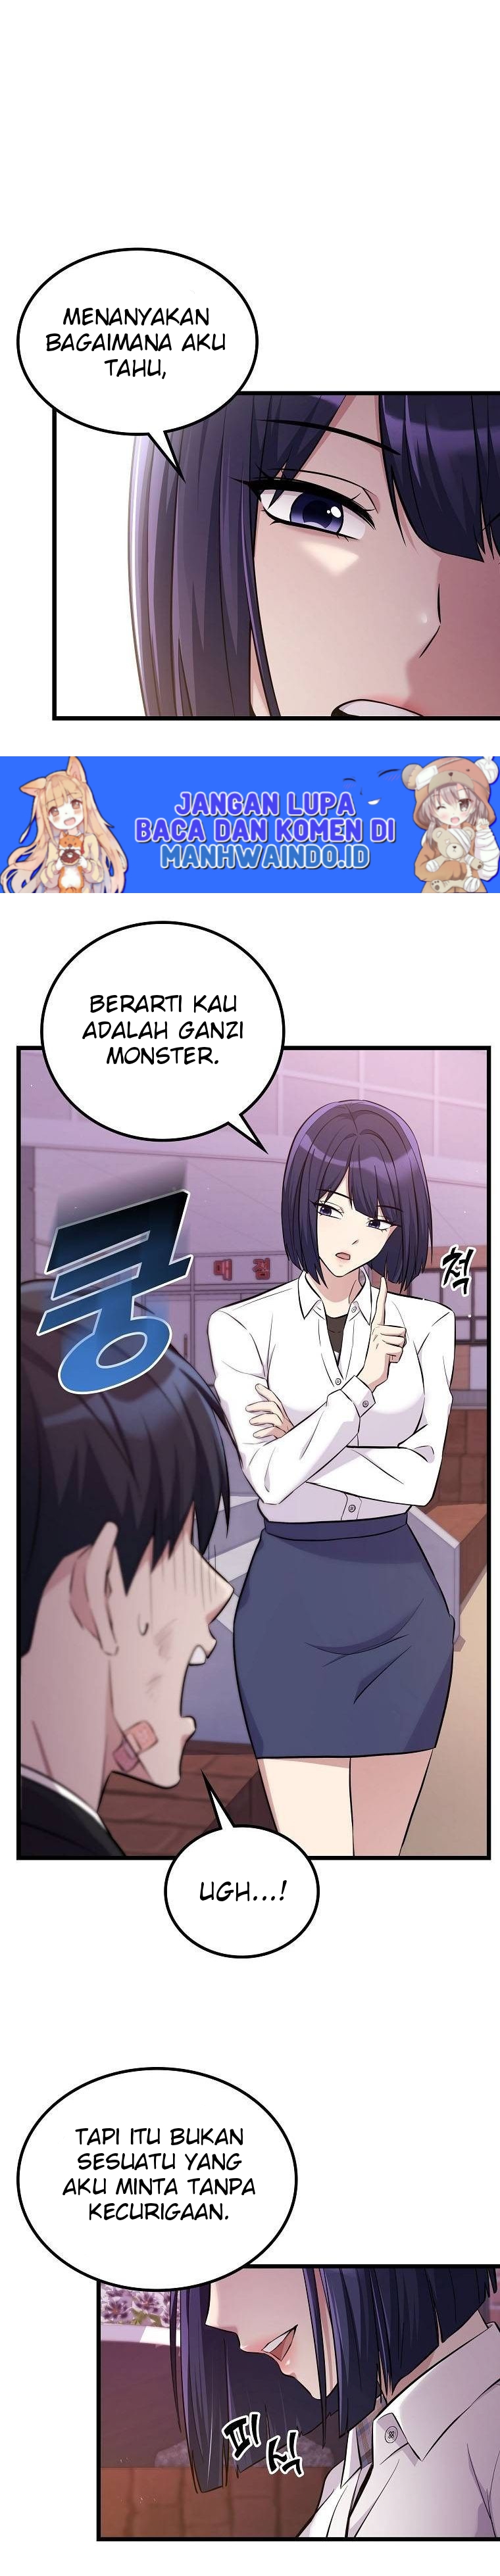 Ganzi Monster Chapter 11